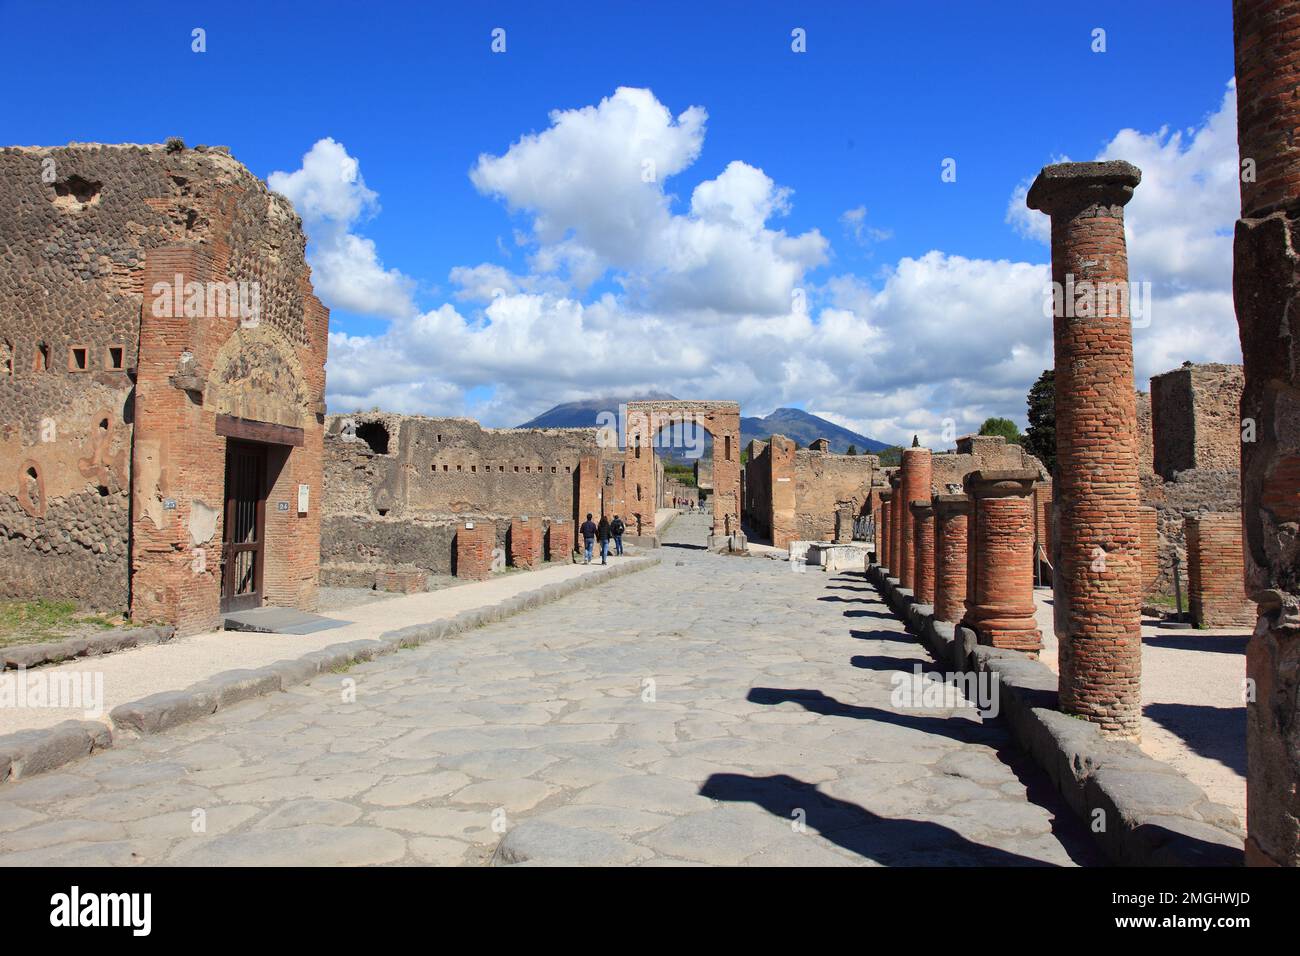 Straße und Caligulabogen, Pompeji, Antike Stadt in Kampanien am Golf von Neapel, beim Ausbruch des Vesuvs im Jahr 79 n. Chr. verschüttet, Italia Foto Stock